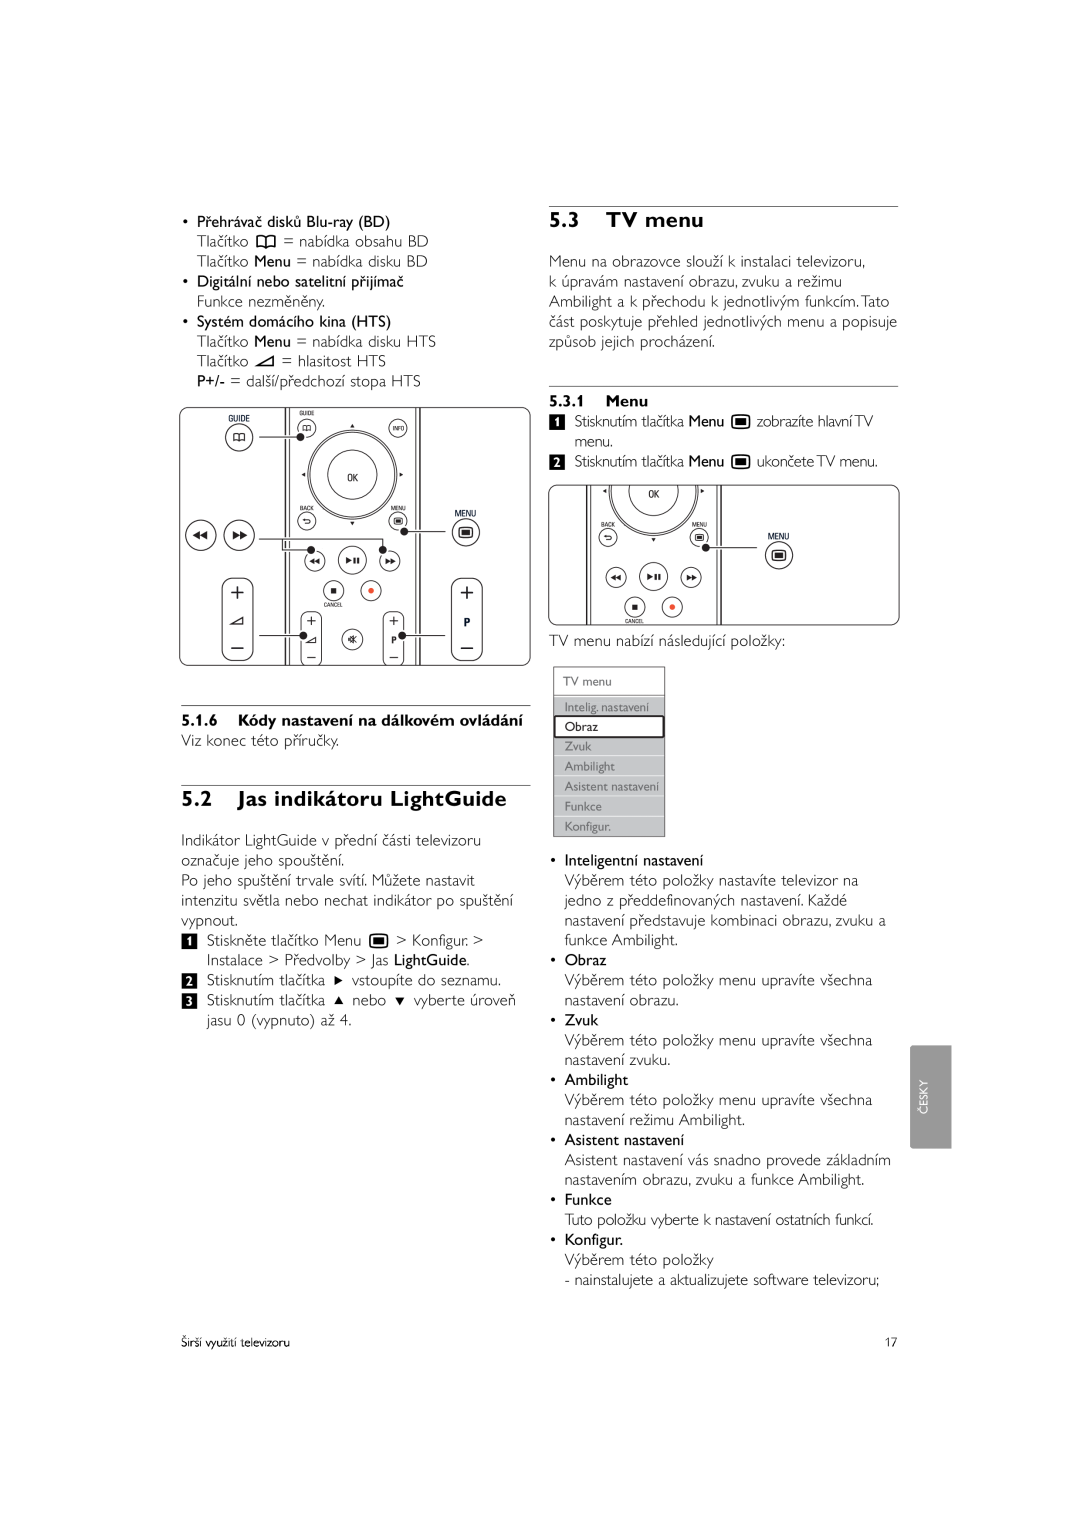 Philips 37PFL9903H/10 manual 5.2Jas indikátoru LightGuide, 5.3TV menu, 5.1.6 Kódy nastavení na dálkovém ovládání, Menu 